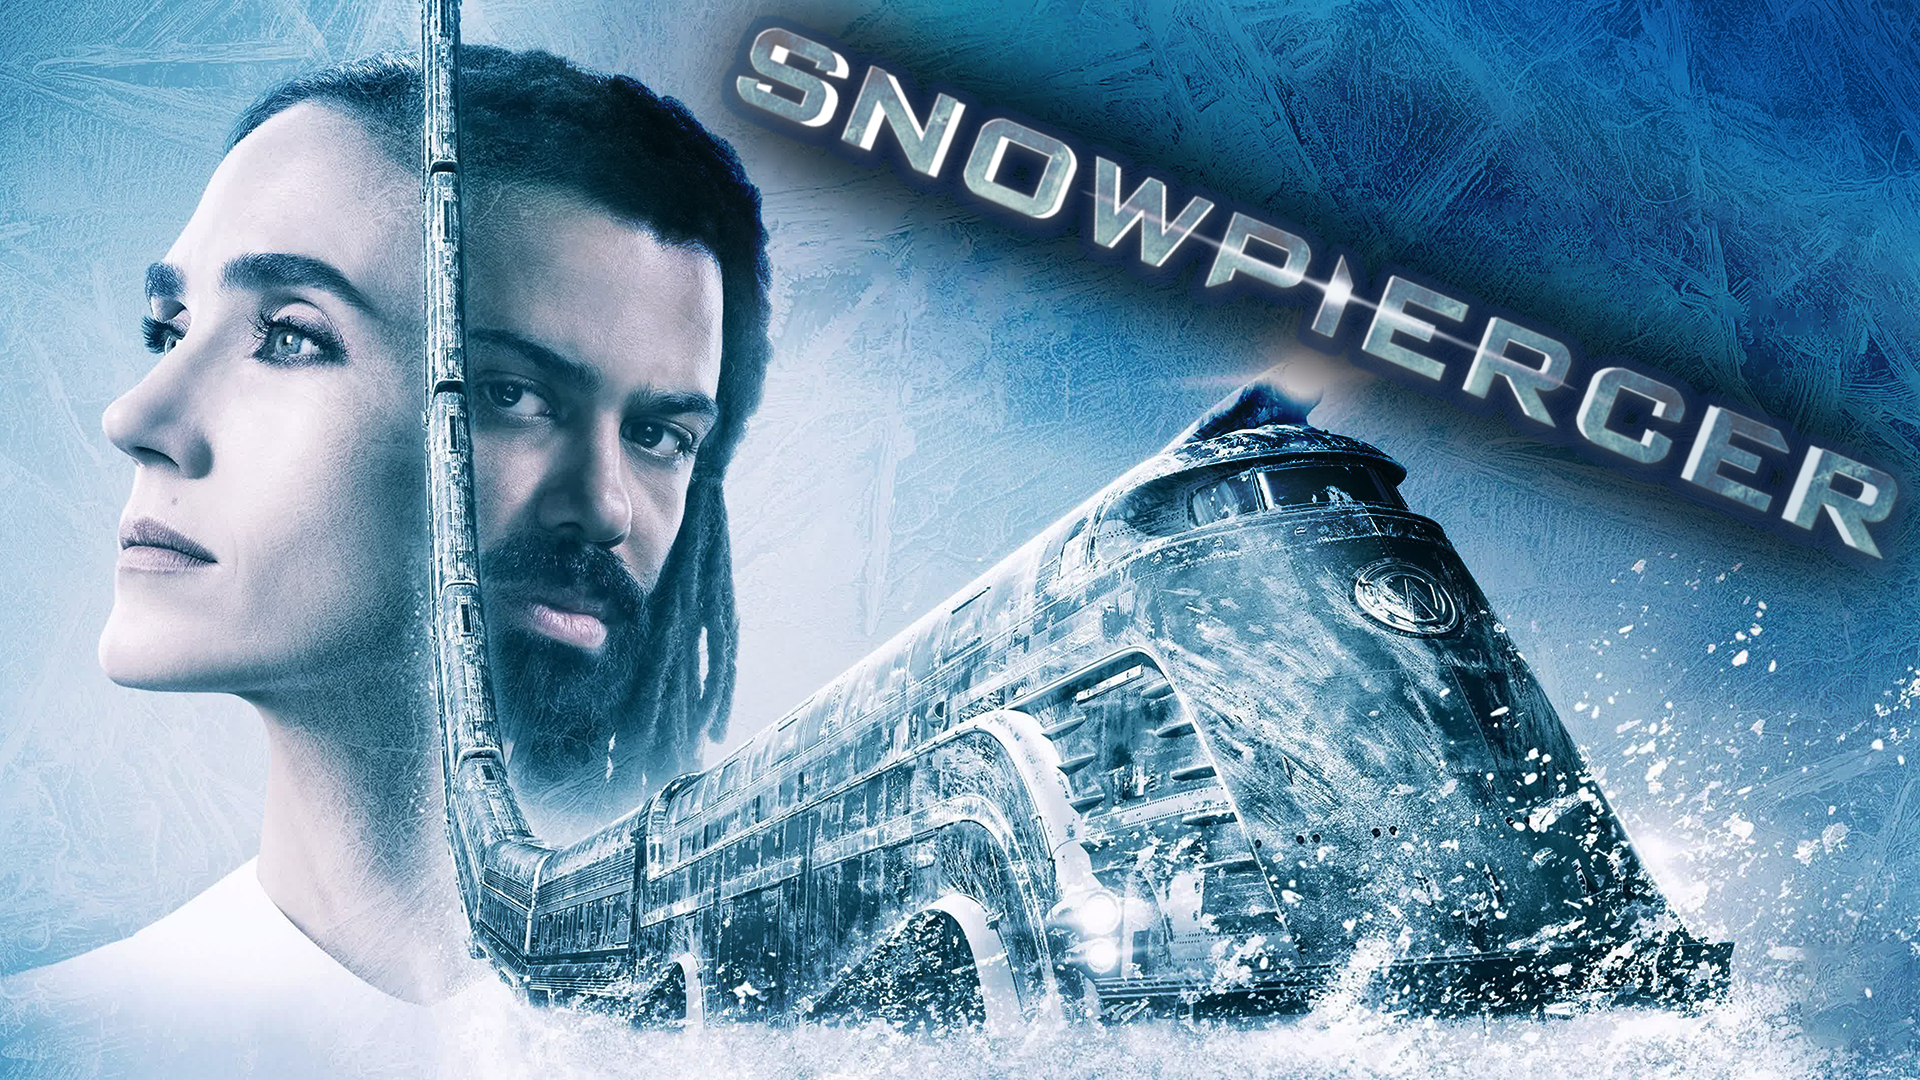 Сквозь снег – 2 сезон 6 серия / Snowpiercer